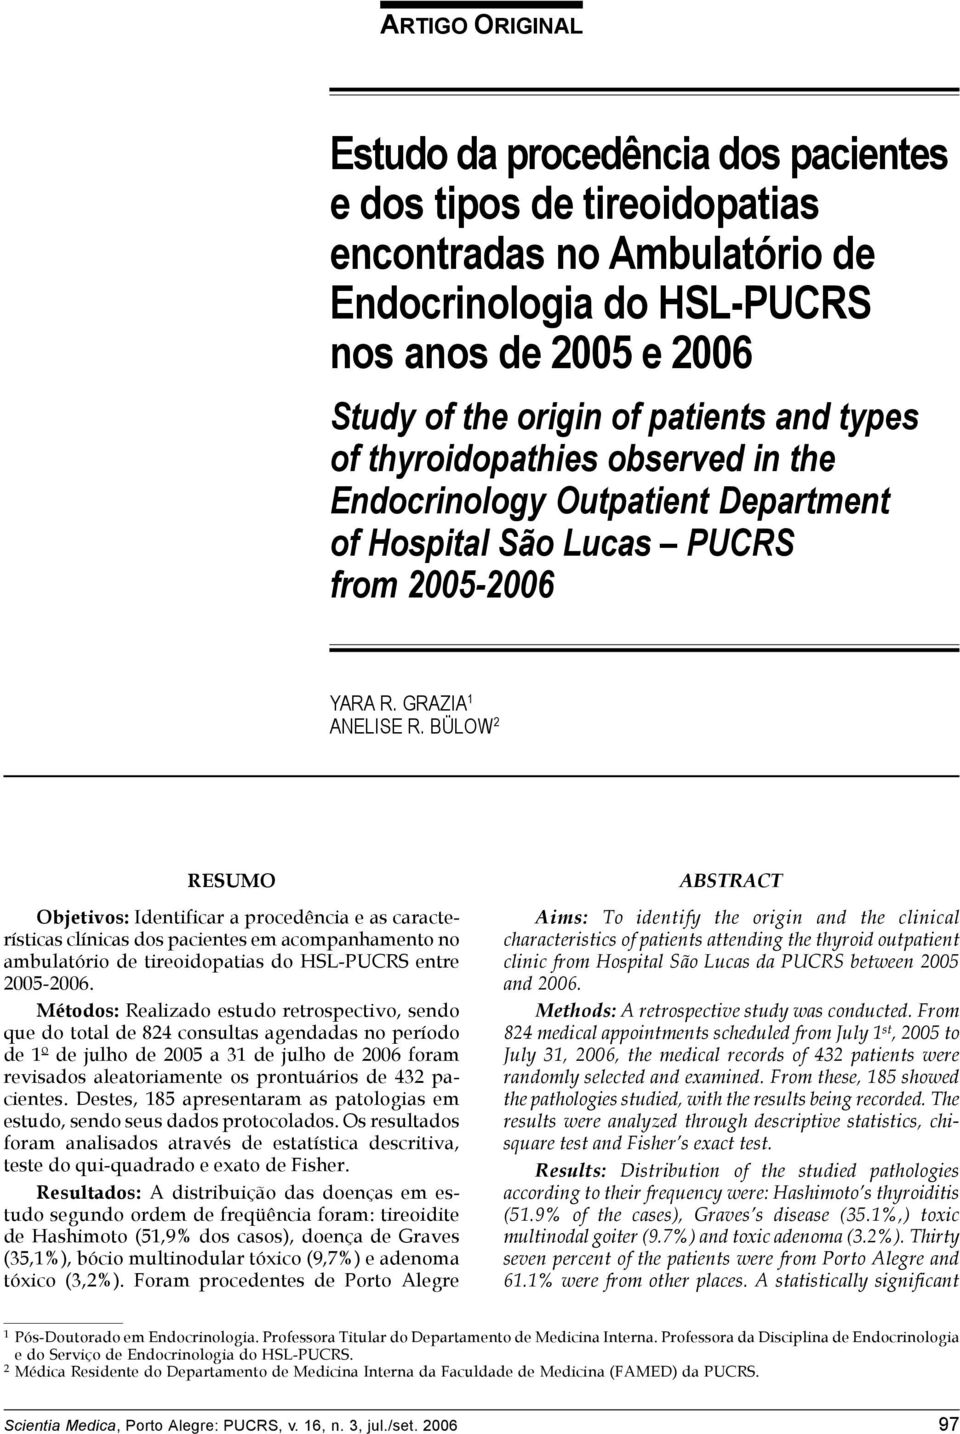 BÜLOW 2 RESUMO Objetivos: Identificar a procedência e as características clínicas dos pacientes em acompanhamento no ambulatório de tireoidopatias do HSL-PUCRS entre 2005-2006.